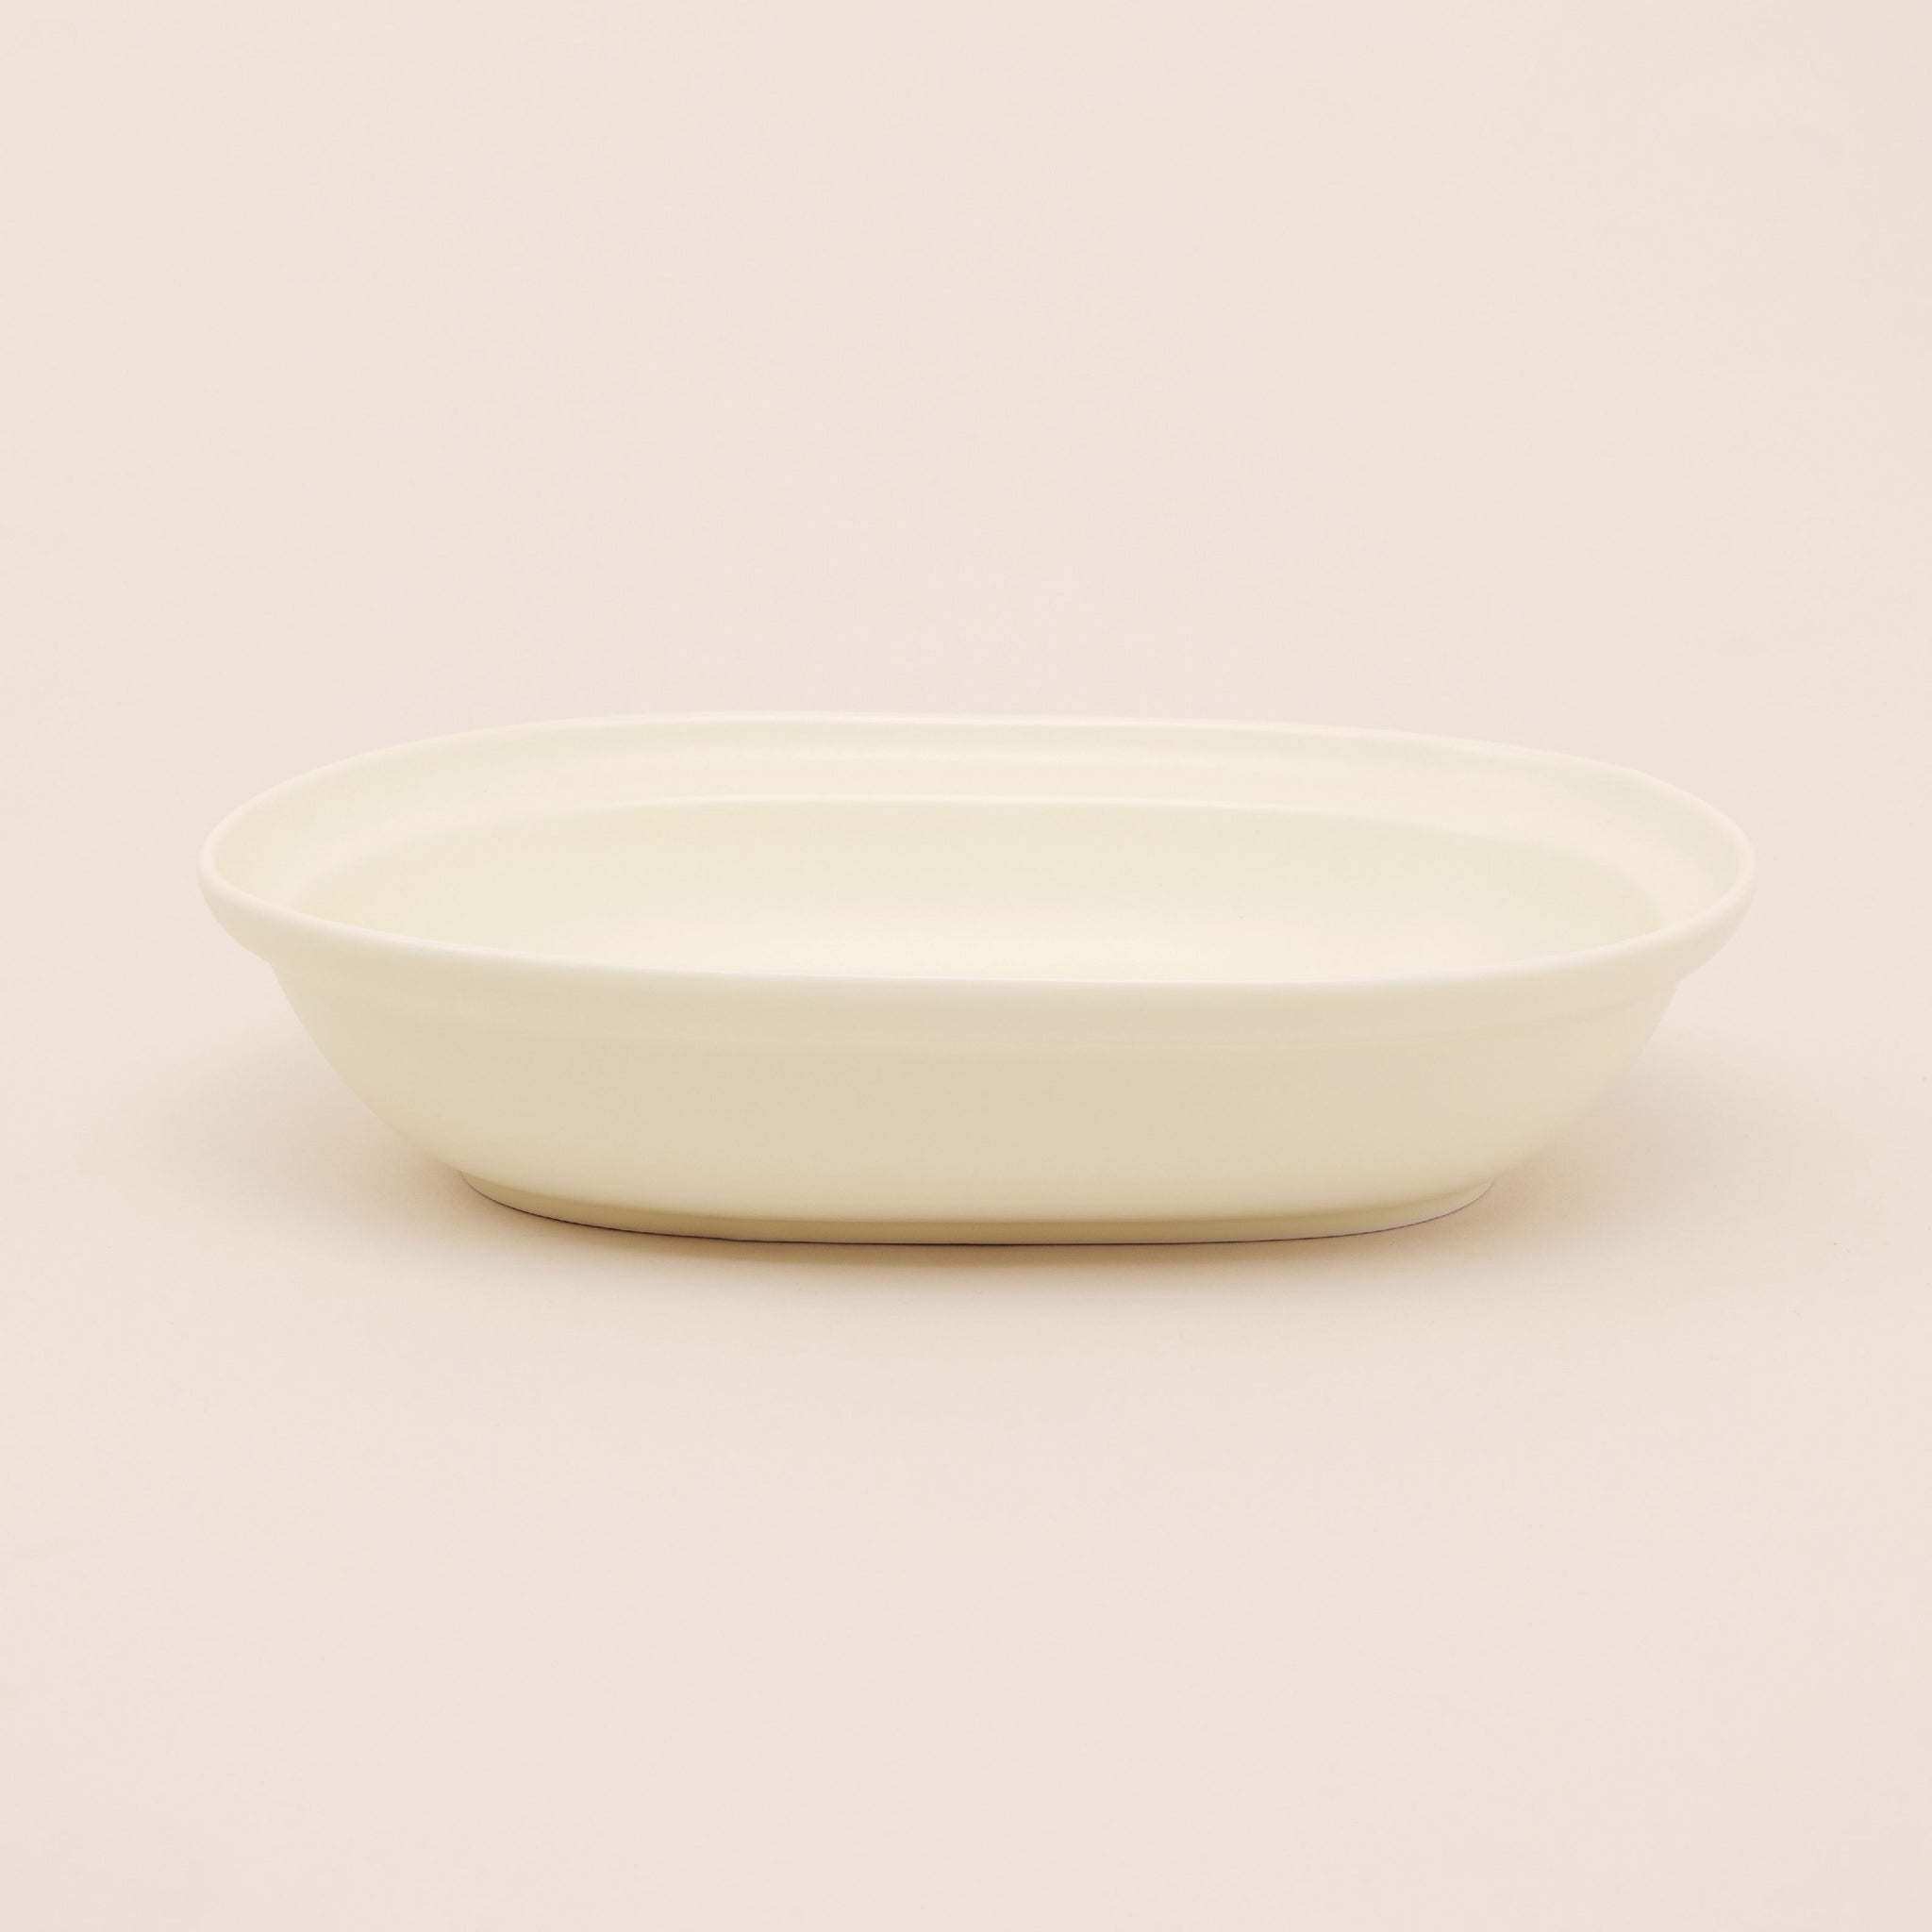 Ceramic Serving Plate 9.5 Inch | จานเซรามิก